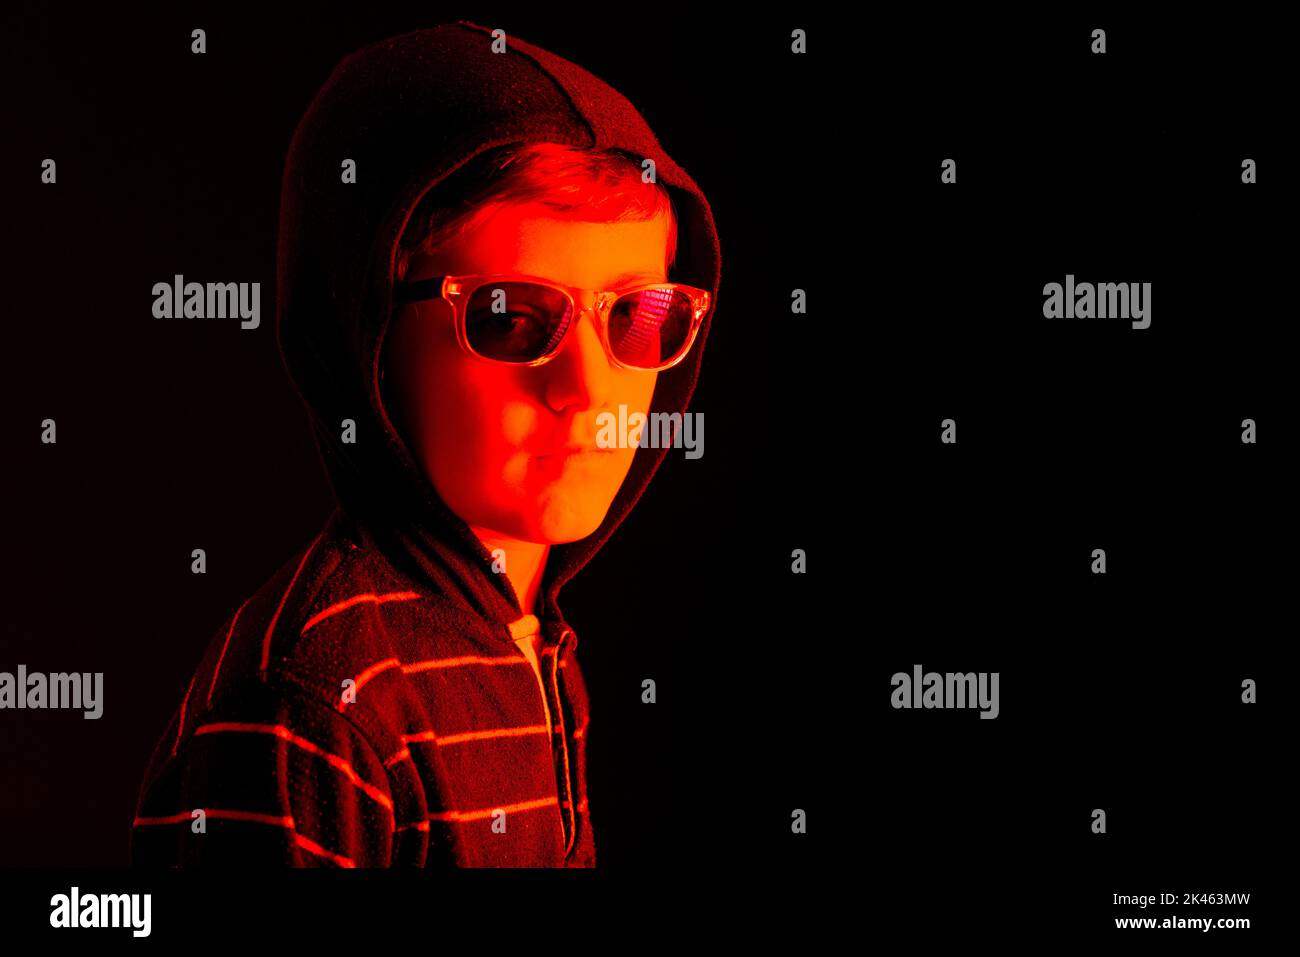 Kaukasisches Kind mit Kapuzen-Sweatshirt und Sonnenbrille, mit ernstem Ausdruck, mit rotem Licht beleuchtet, auf schwarzem Hintergrund und Platz zum Kopieren. Stockfoto